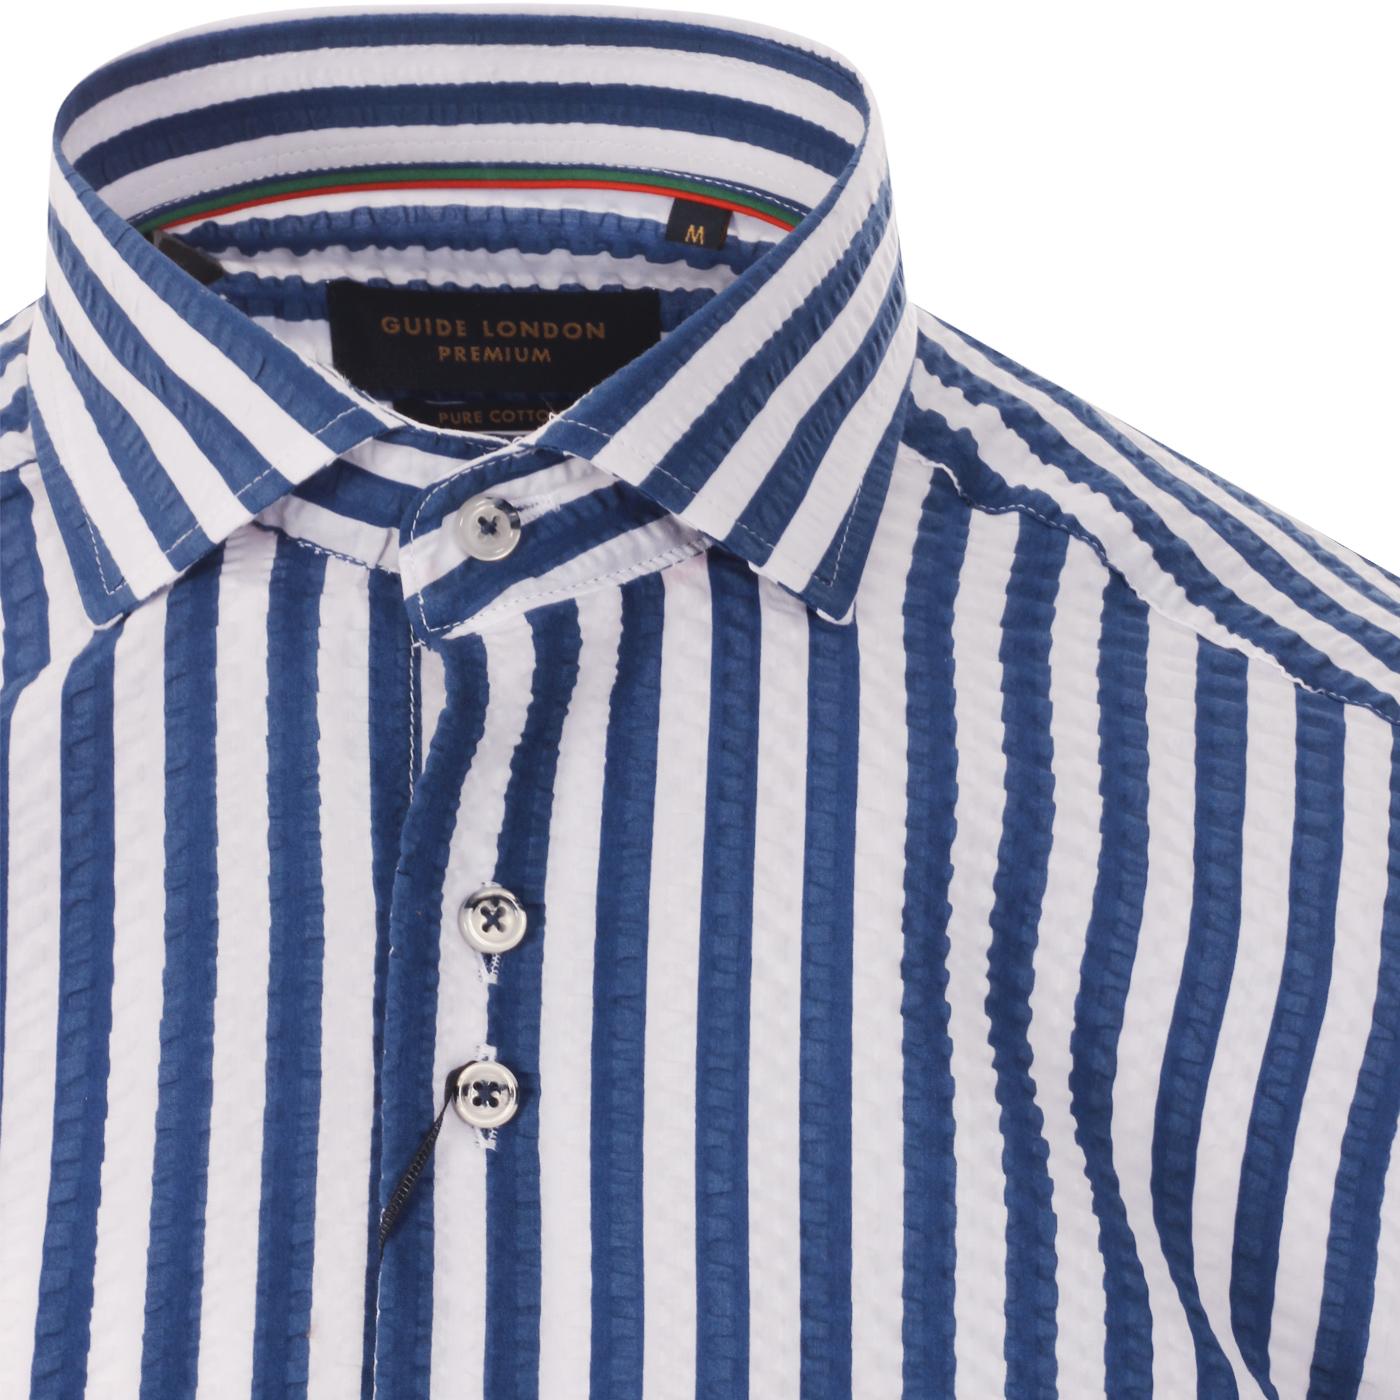 GUIDE LONDON 60s Mod Stripe Seersucker Shirt in White/Blue